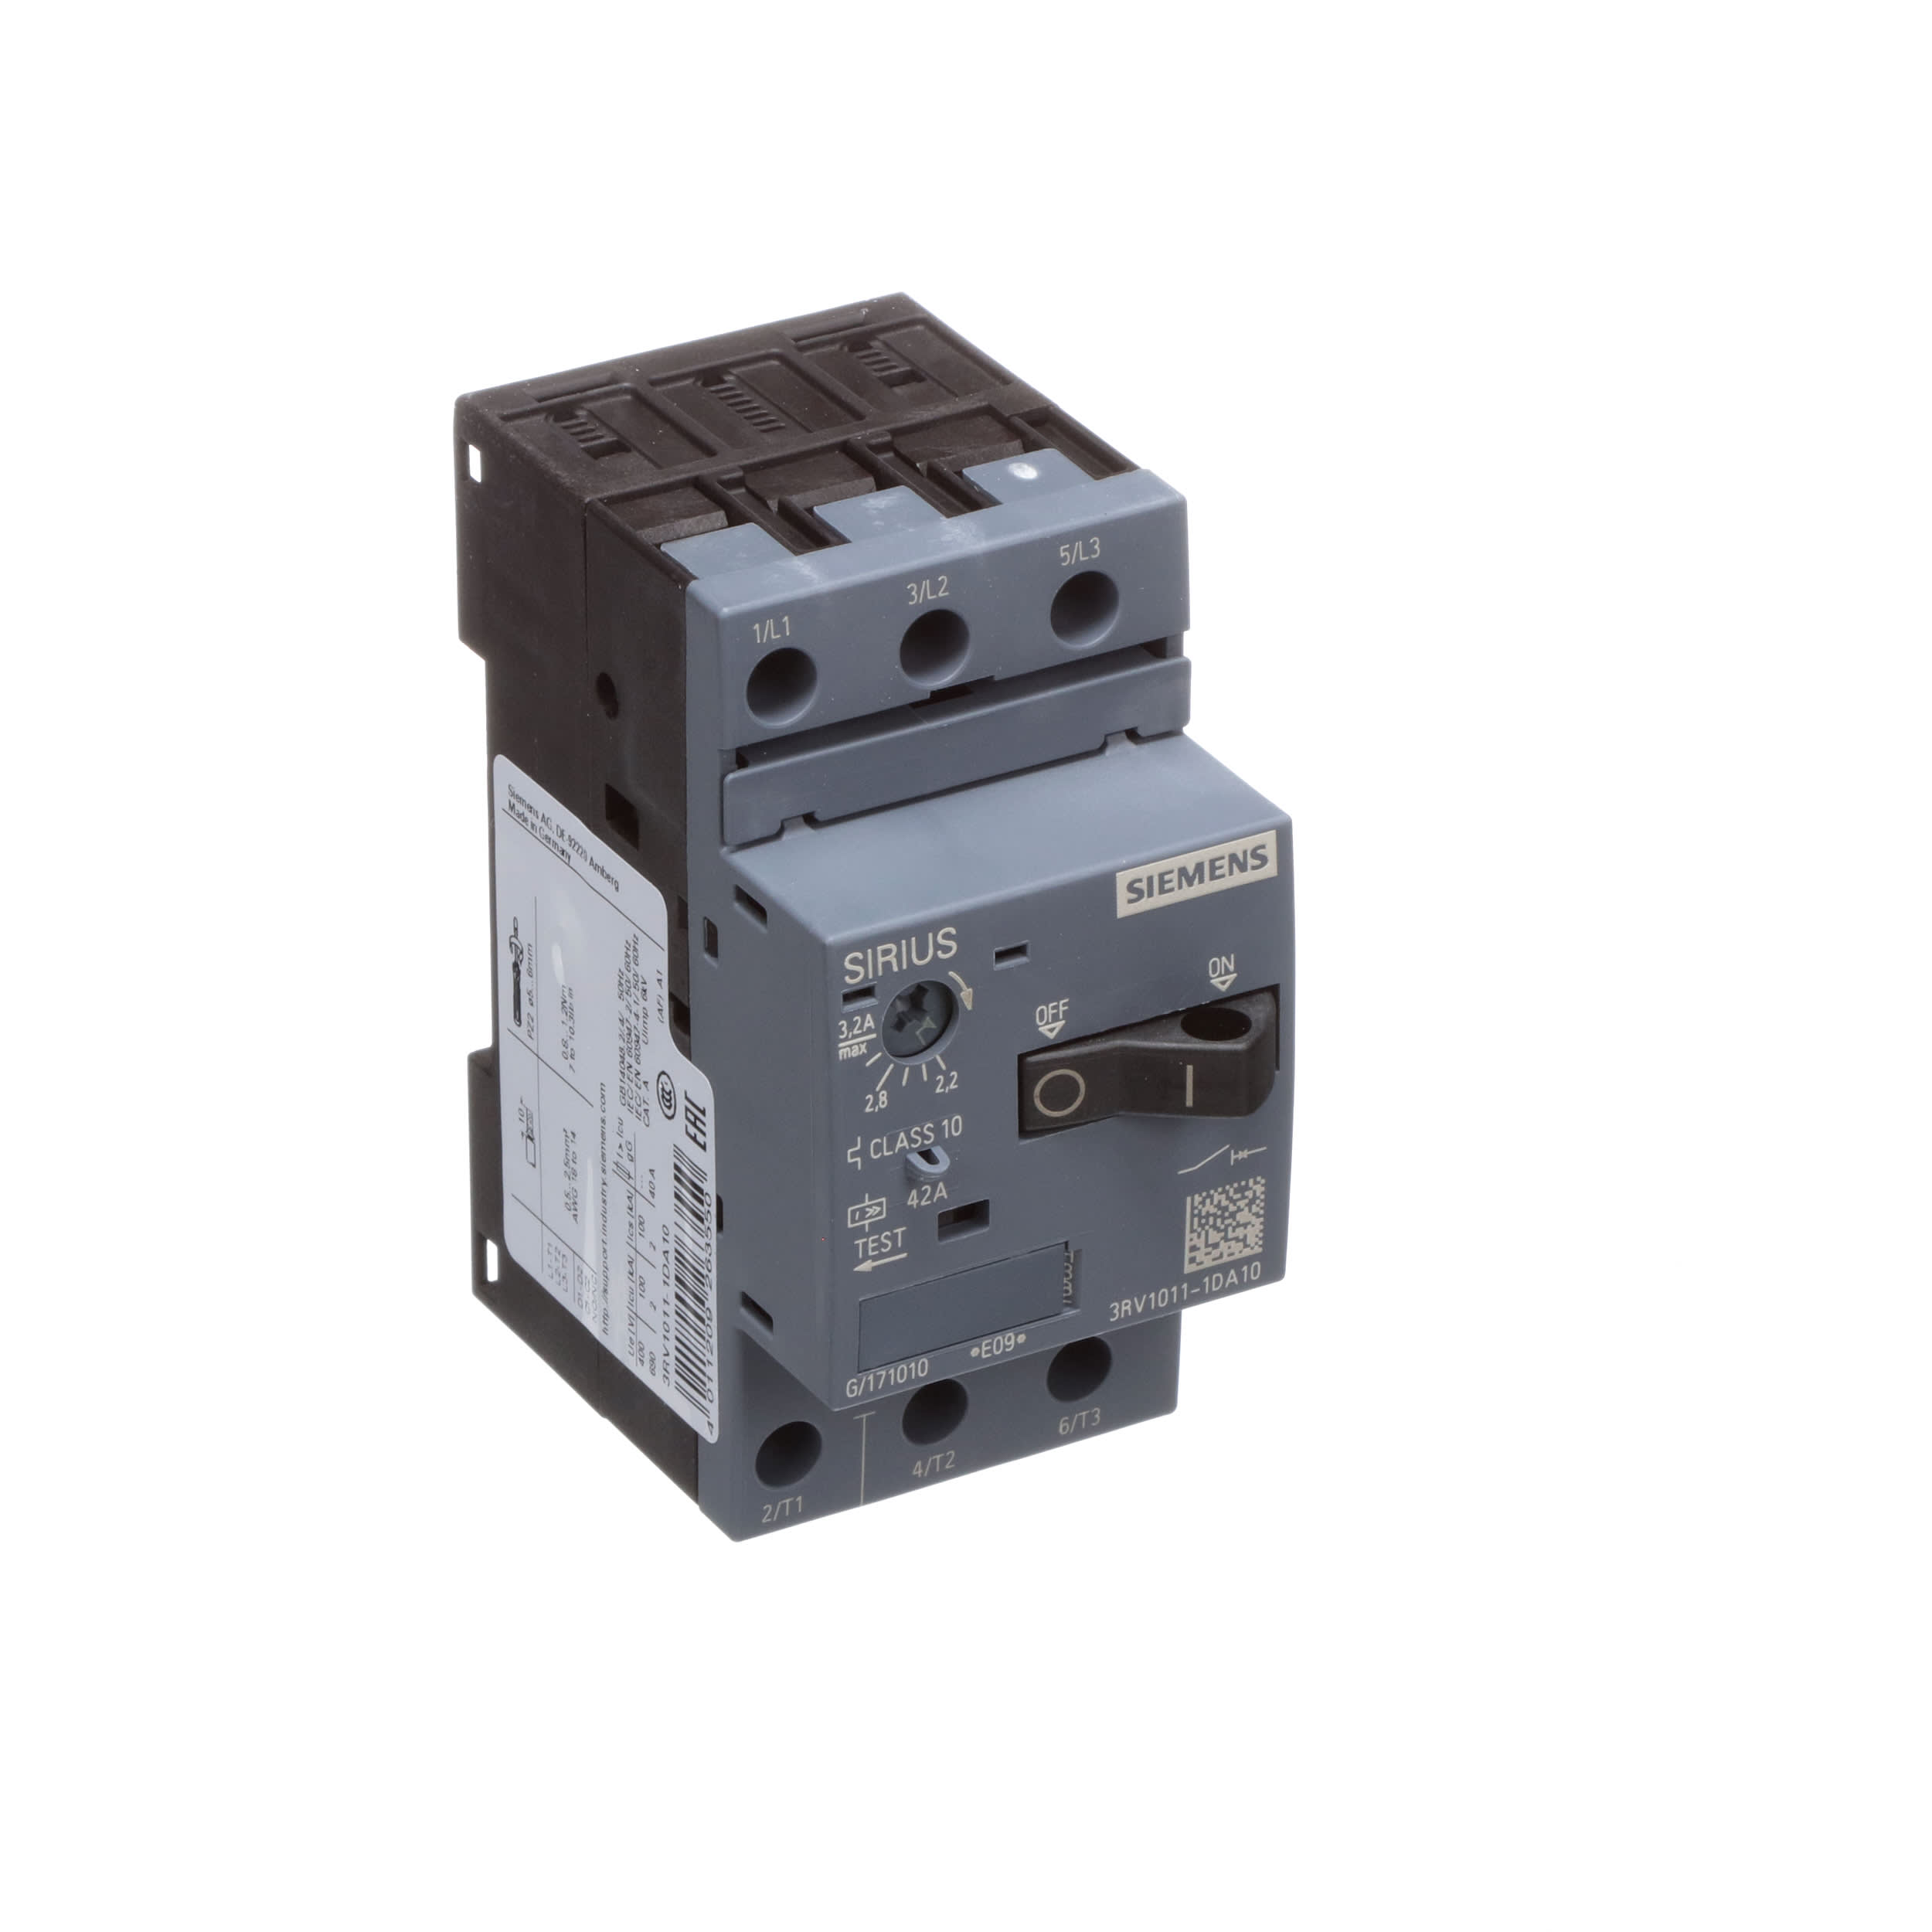 # 9 RT1 3840 Details about  / Motor circuit breaker SIEMENS 3VU1300-1MD00 0.24-0.4